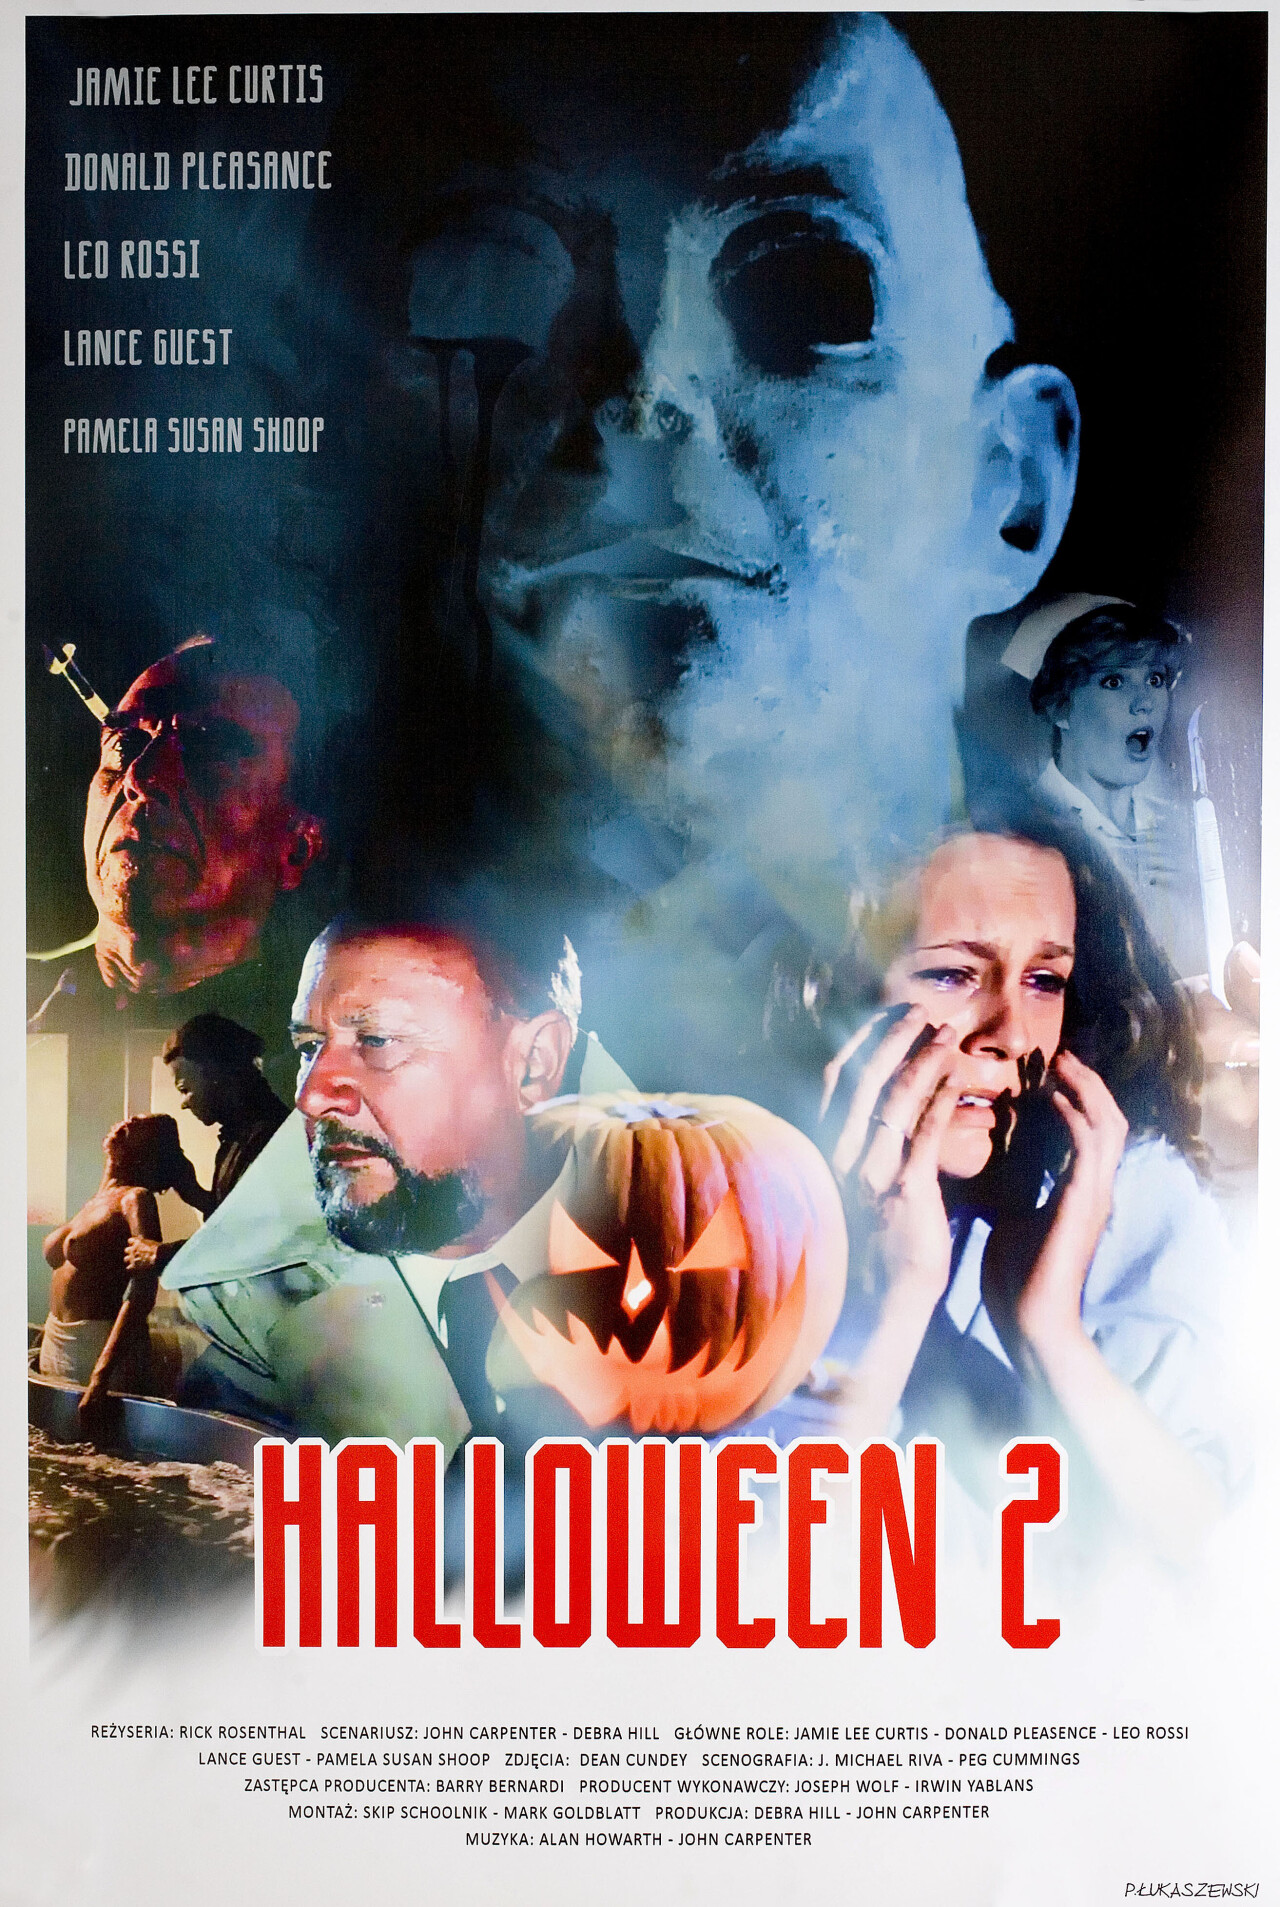 Хэллоуин 2 (Halloween II, 1981), режиссёр Рик Розенталь, польский постер к фильму, автор Петр Лукашевский (ужасы, 2014 год)